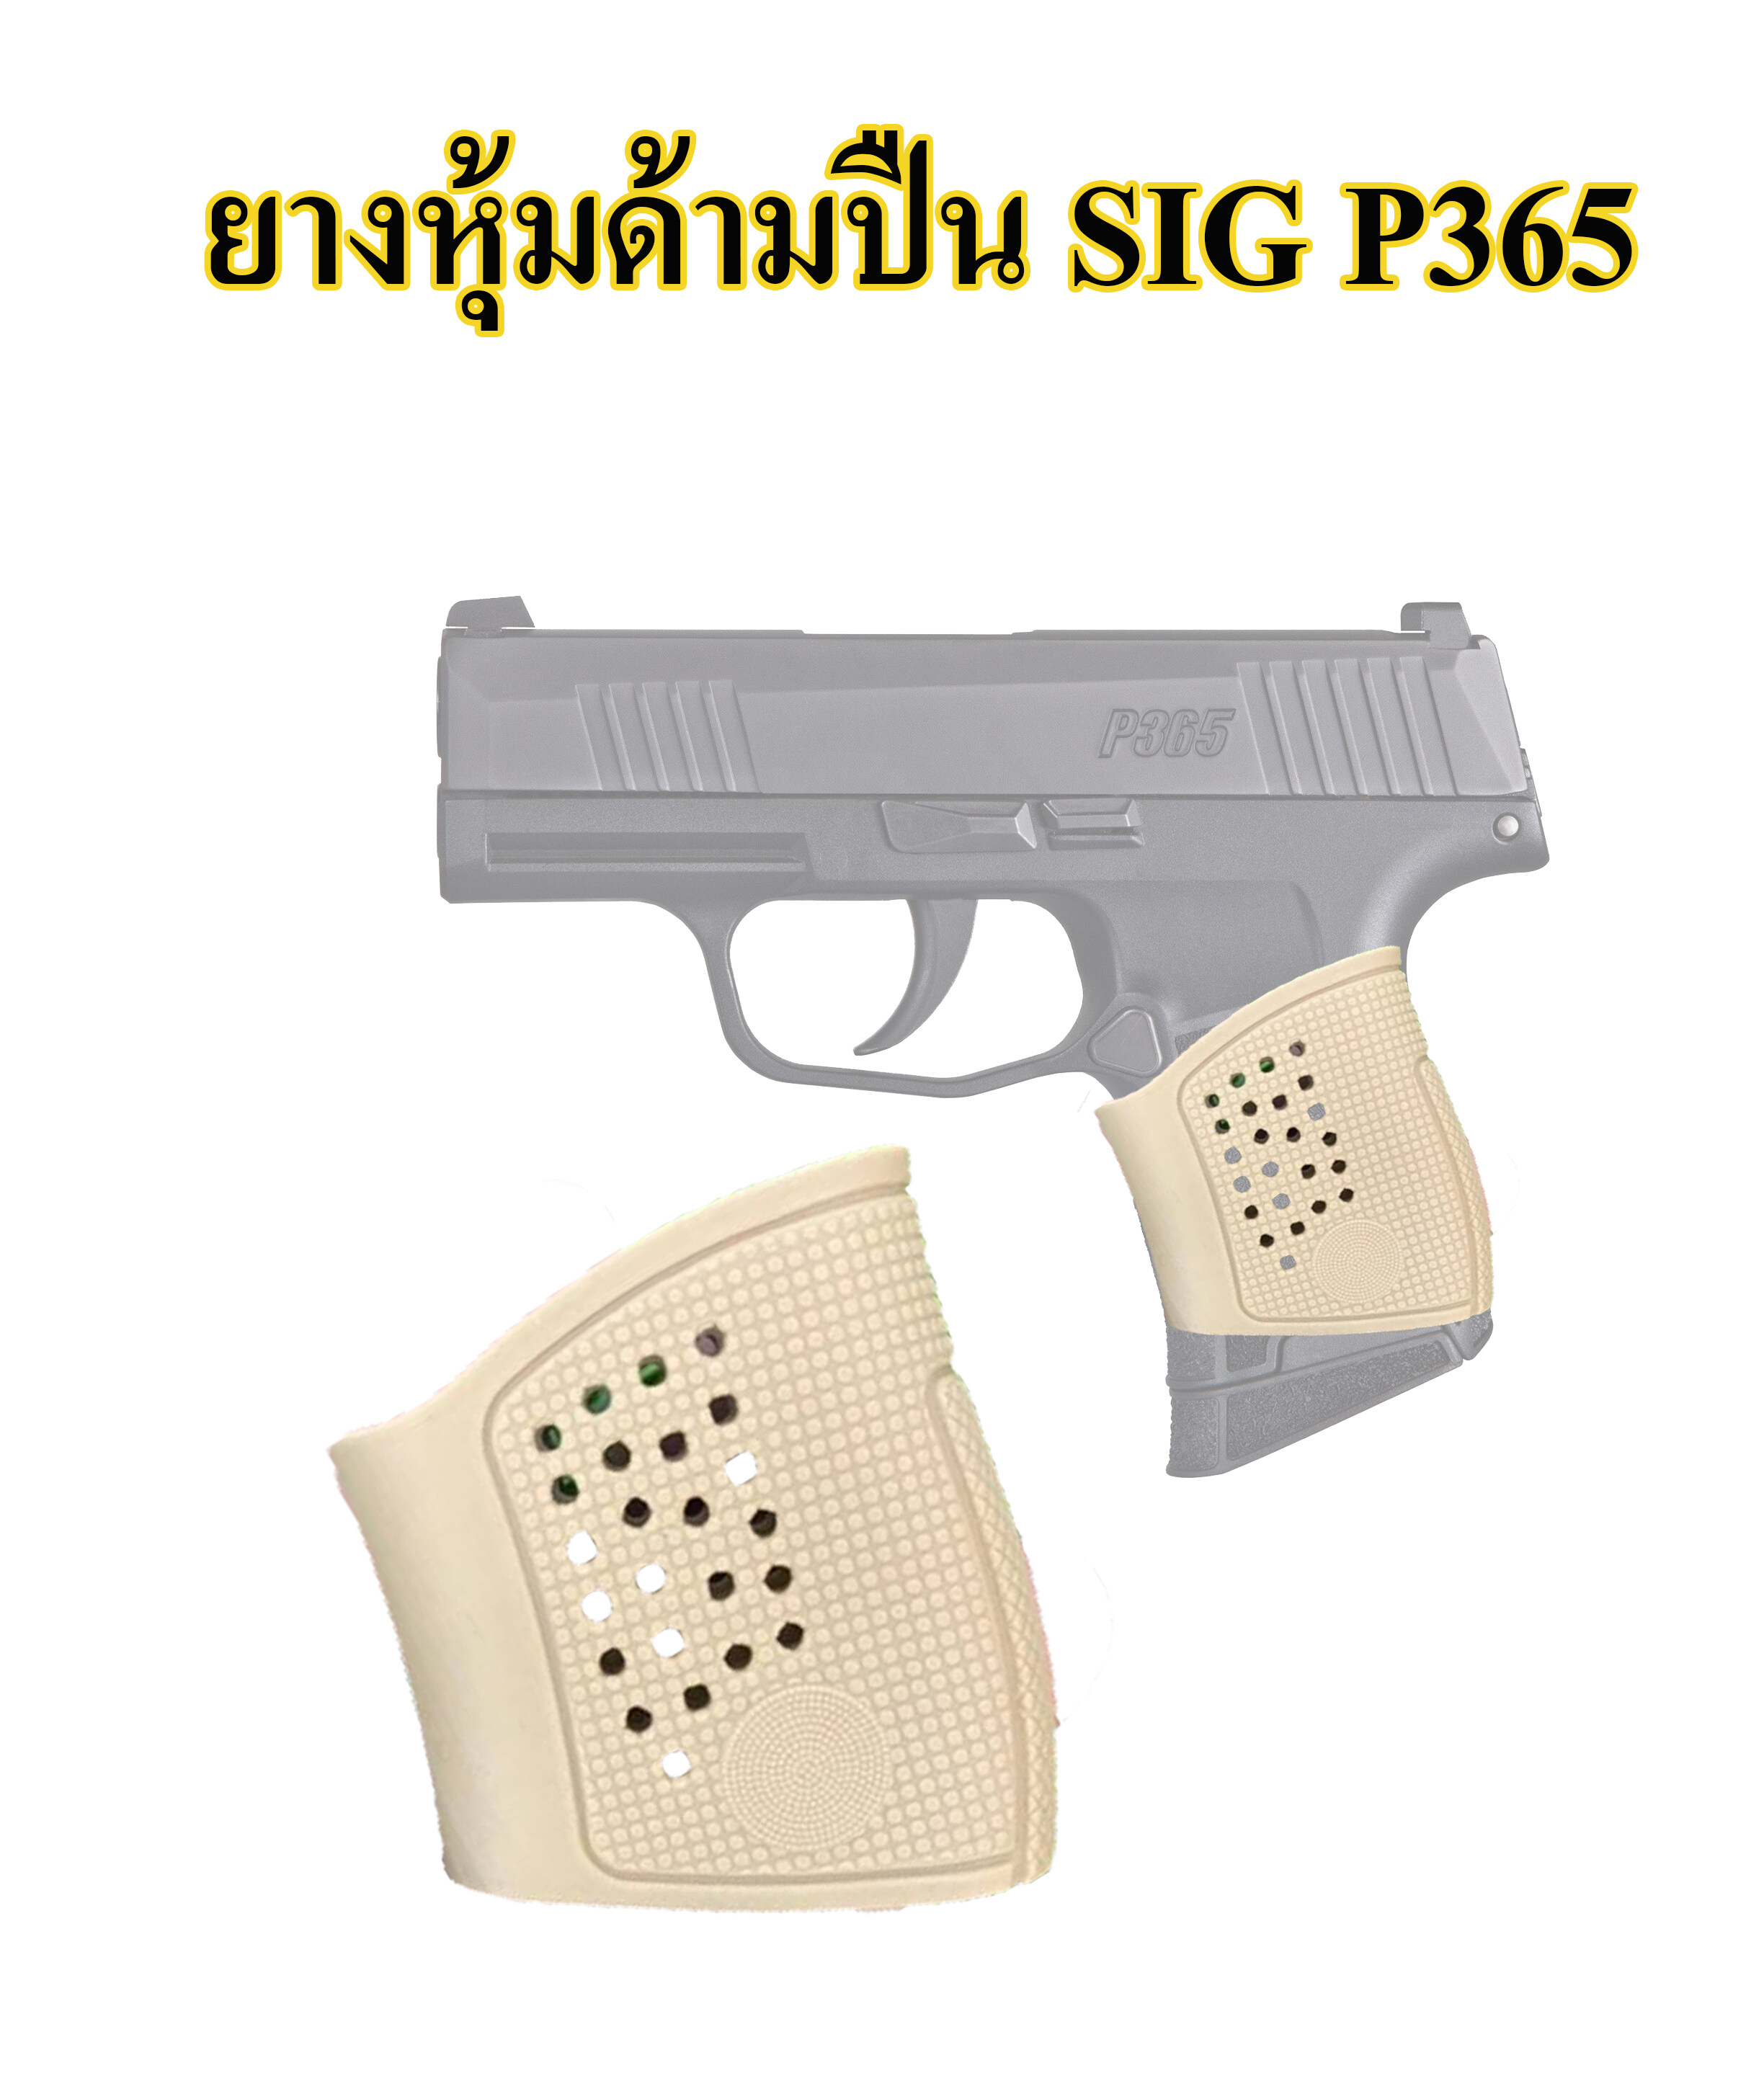 ยางหุ้มด้ามปืน SIG P365 กันลื่น สีดำ สีทราย Grips ปืนสั้นรุ่นสำหรับ ปืนสั้น SIG P 365 , 938 , Ruger  tactical grip glove gloc